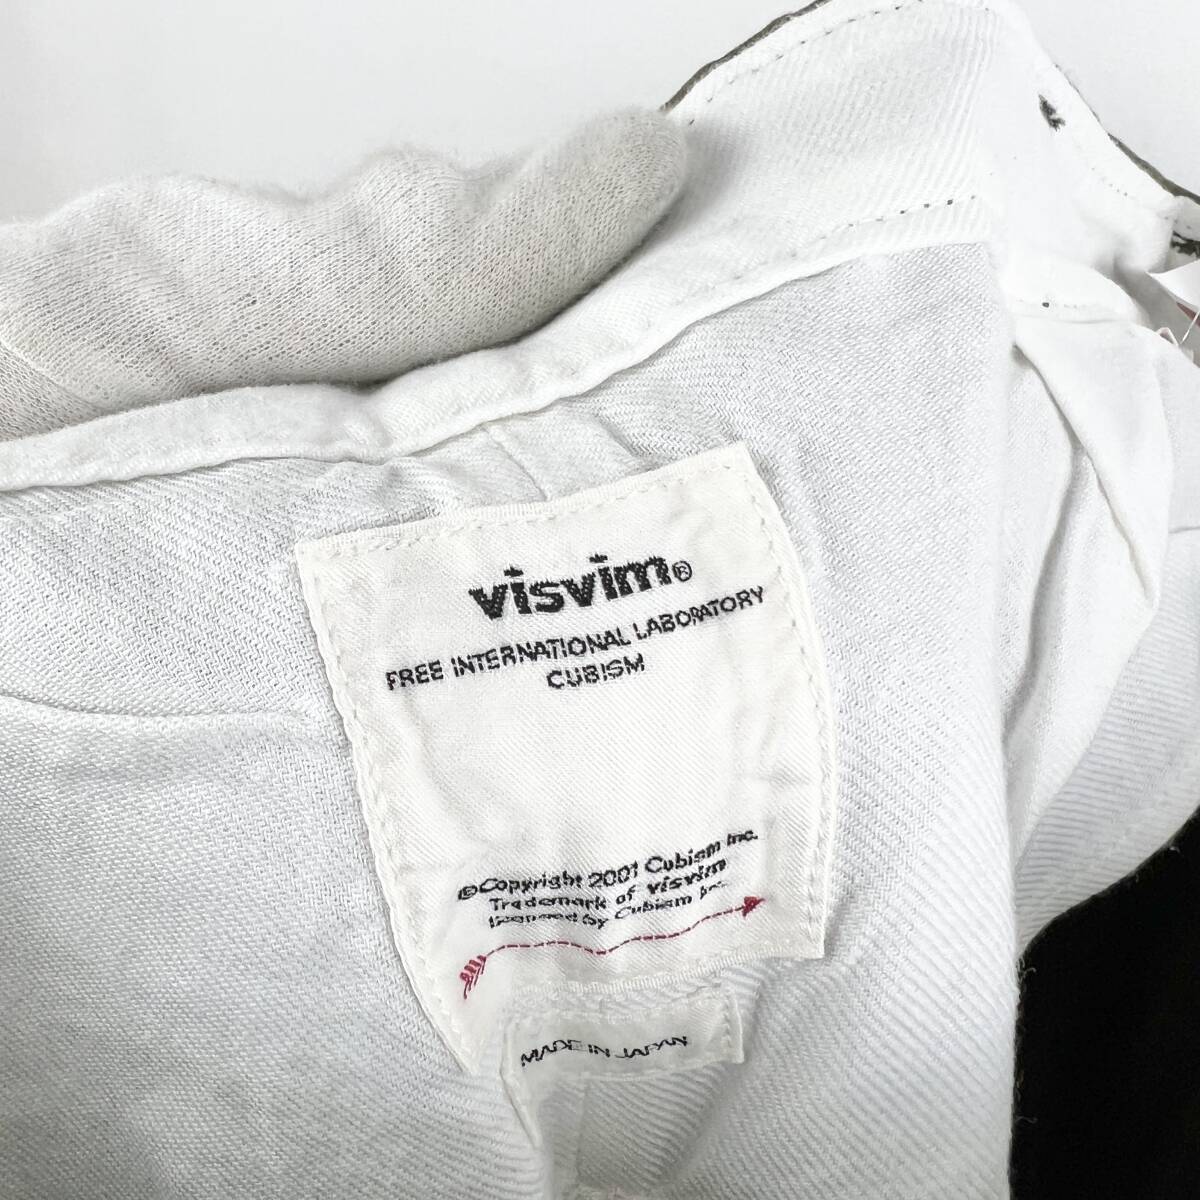 VISVIM(ビズビム) TRADE WIND CHINO TWILL Straight Pants (khaki)_画像9